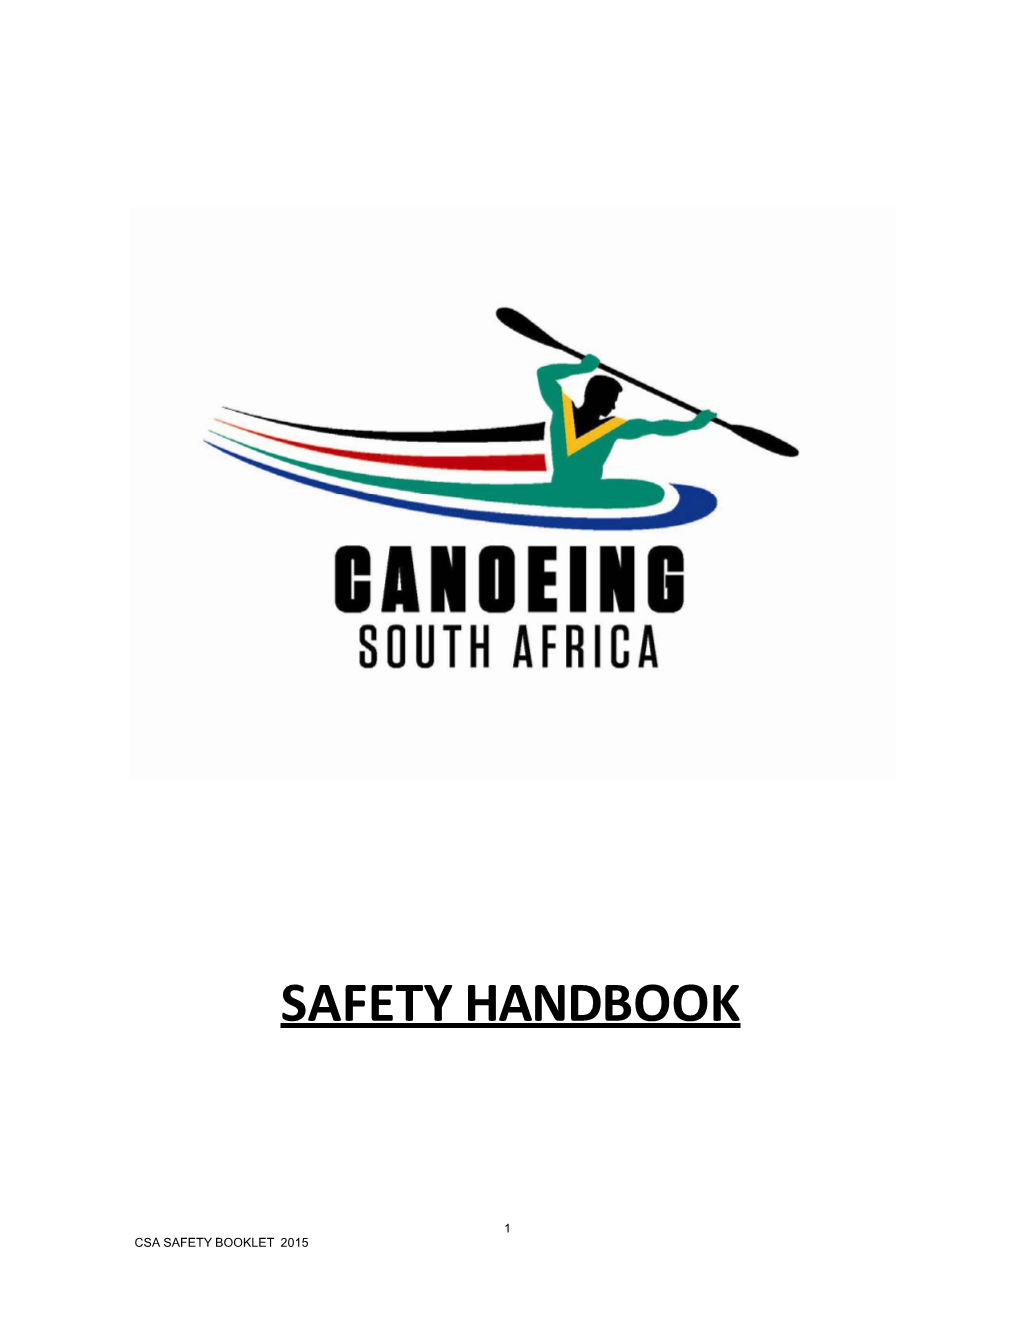 Safety Handbook